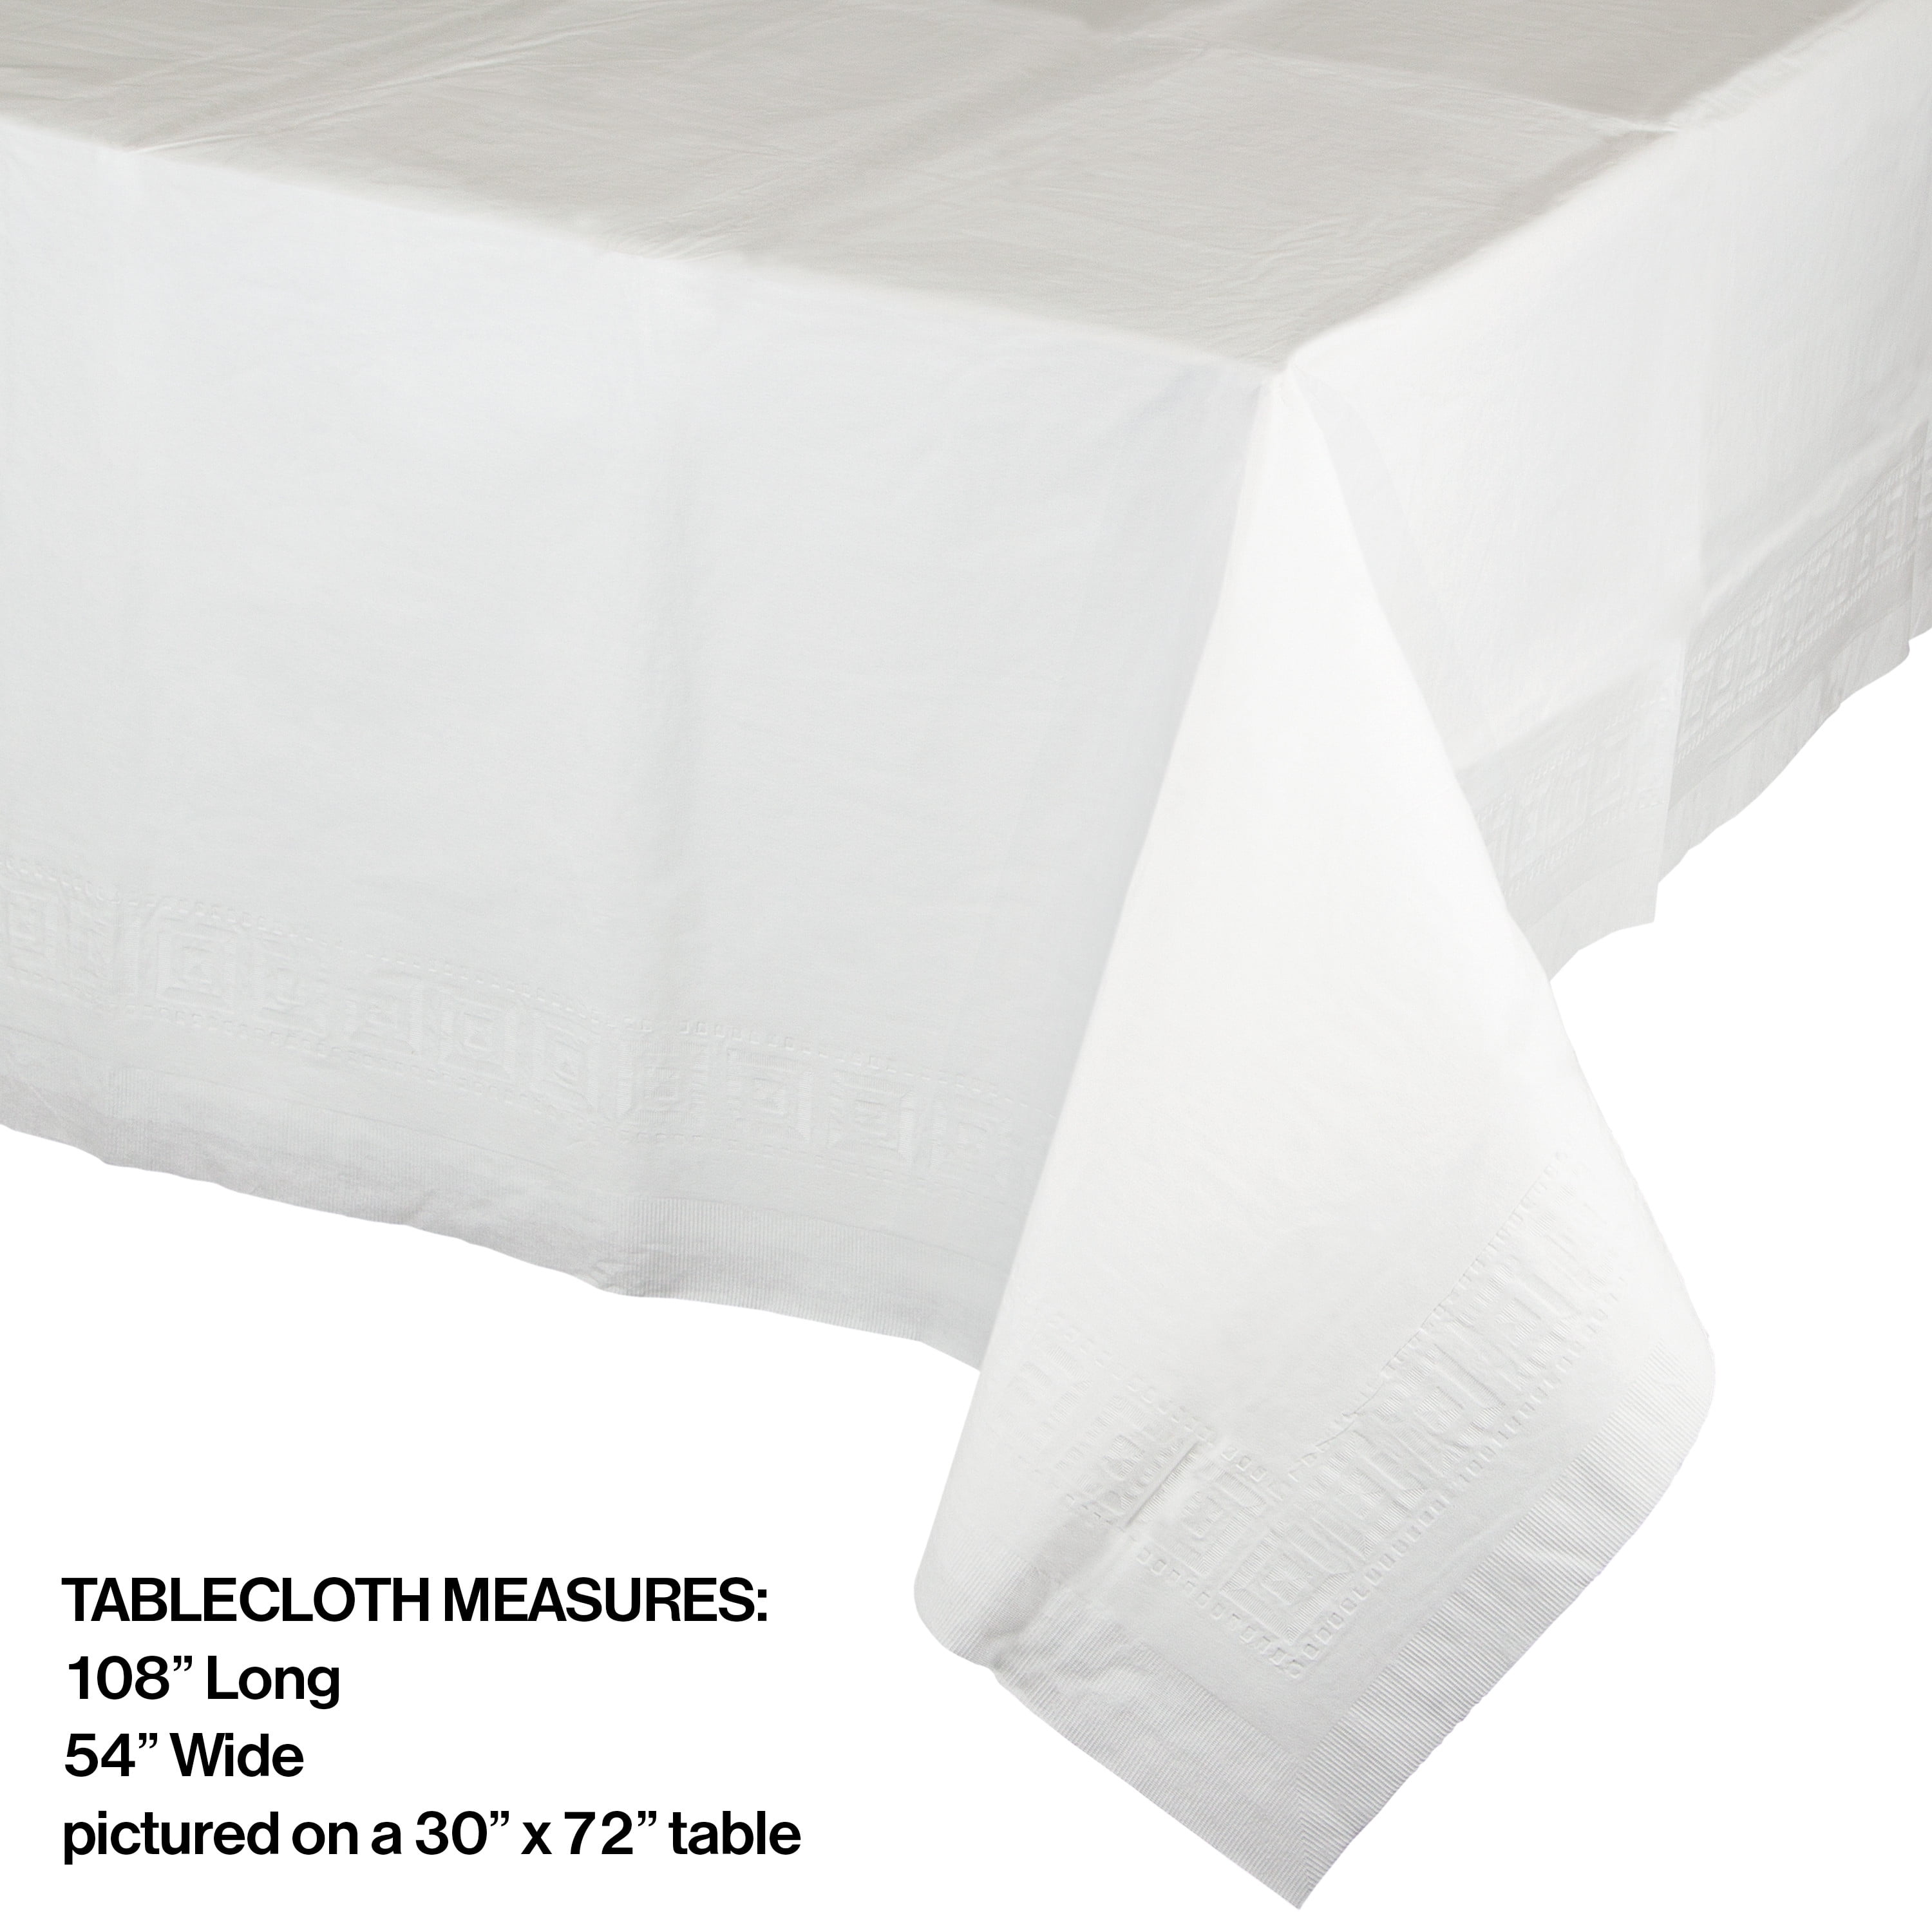 Pre-Cut Paper Tablecloth Buen Provecho 37g 1x1m (400 Units)